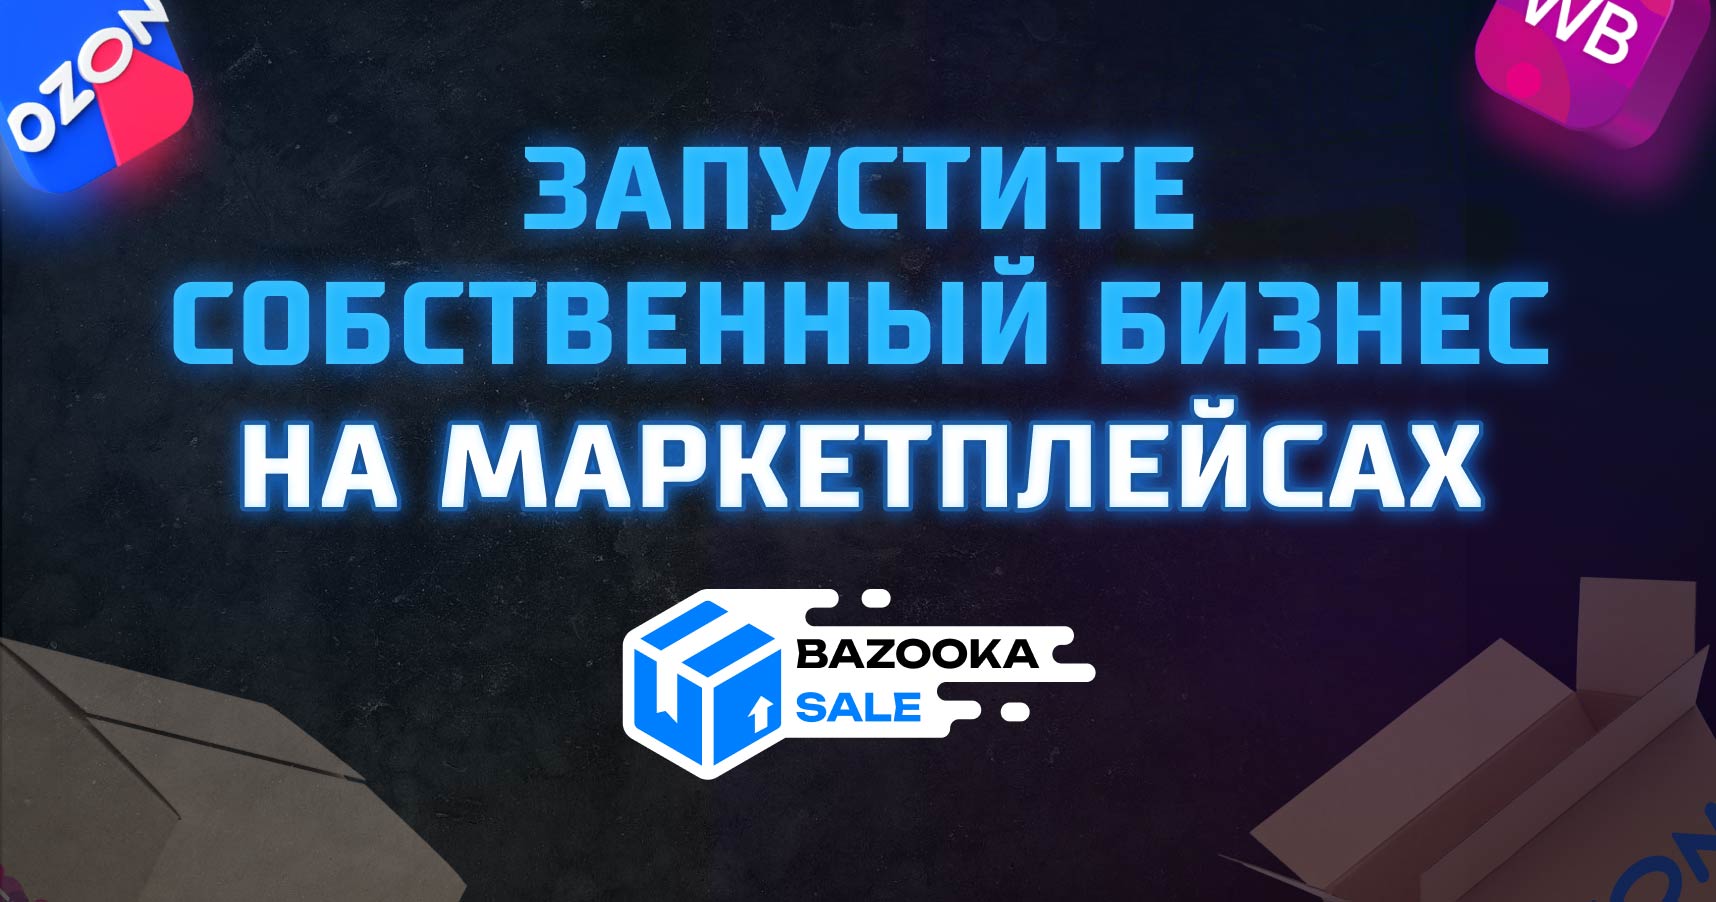 Франшиза Bazooka Store — запуск на маркетплейсах